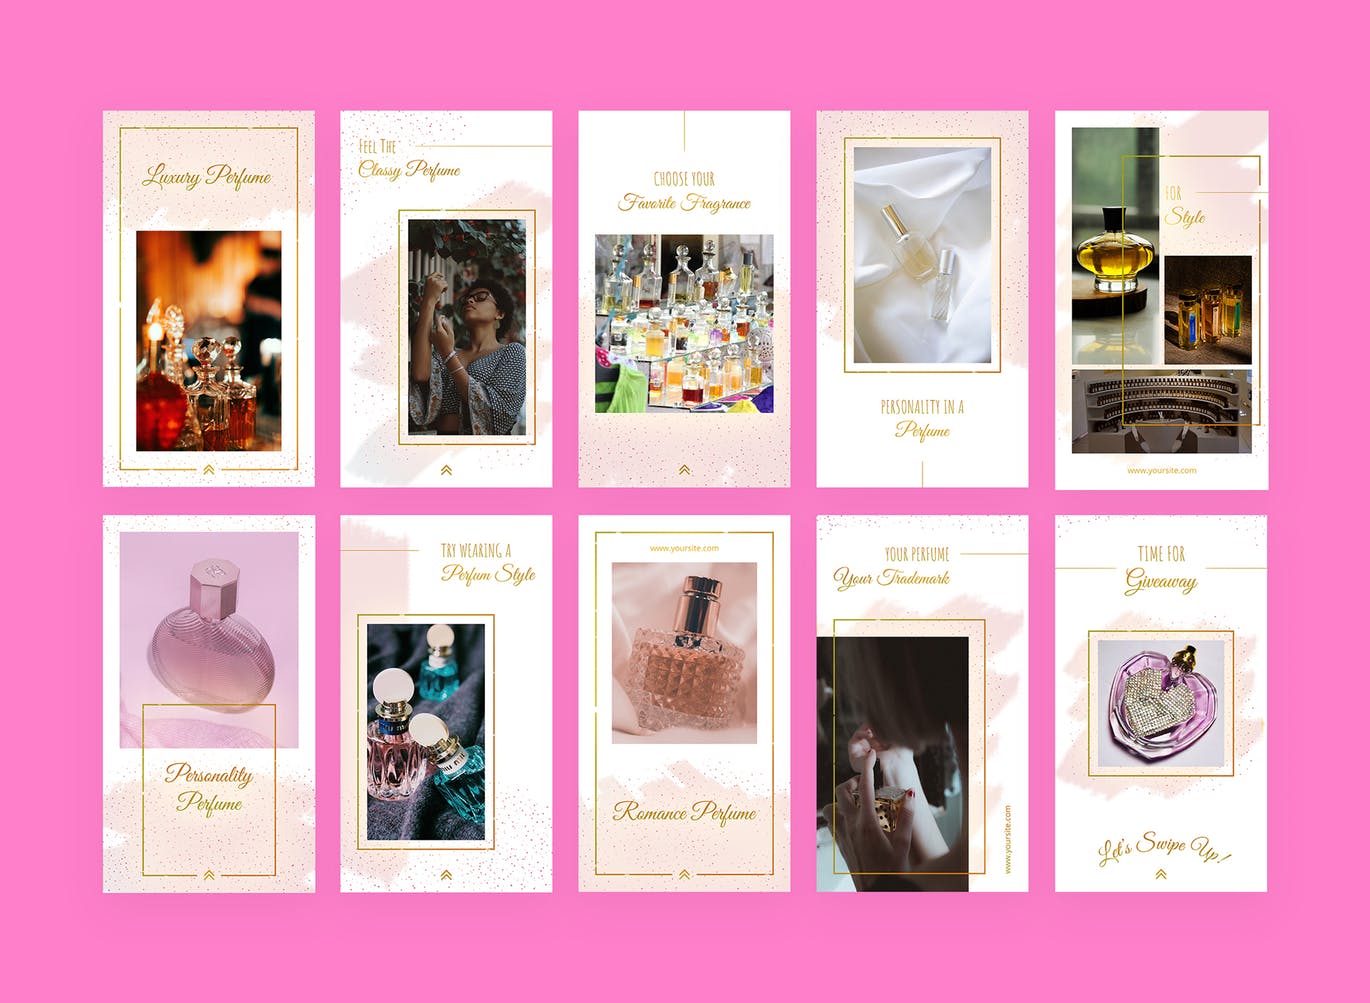 香水品牌故事推广Instagram设计素材包 Fragranza – Instagram Story Pack插图(1)